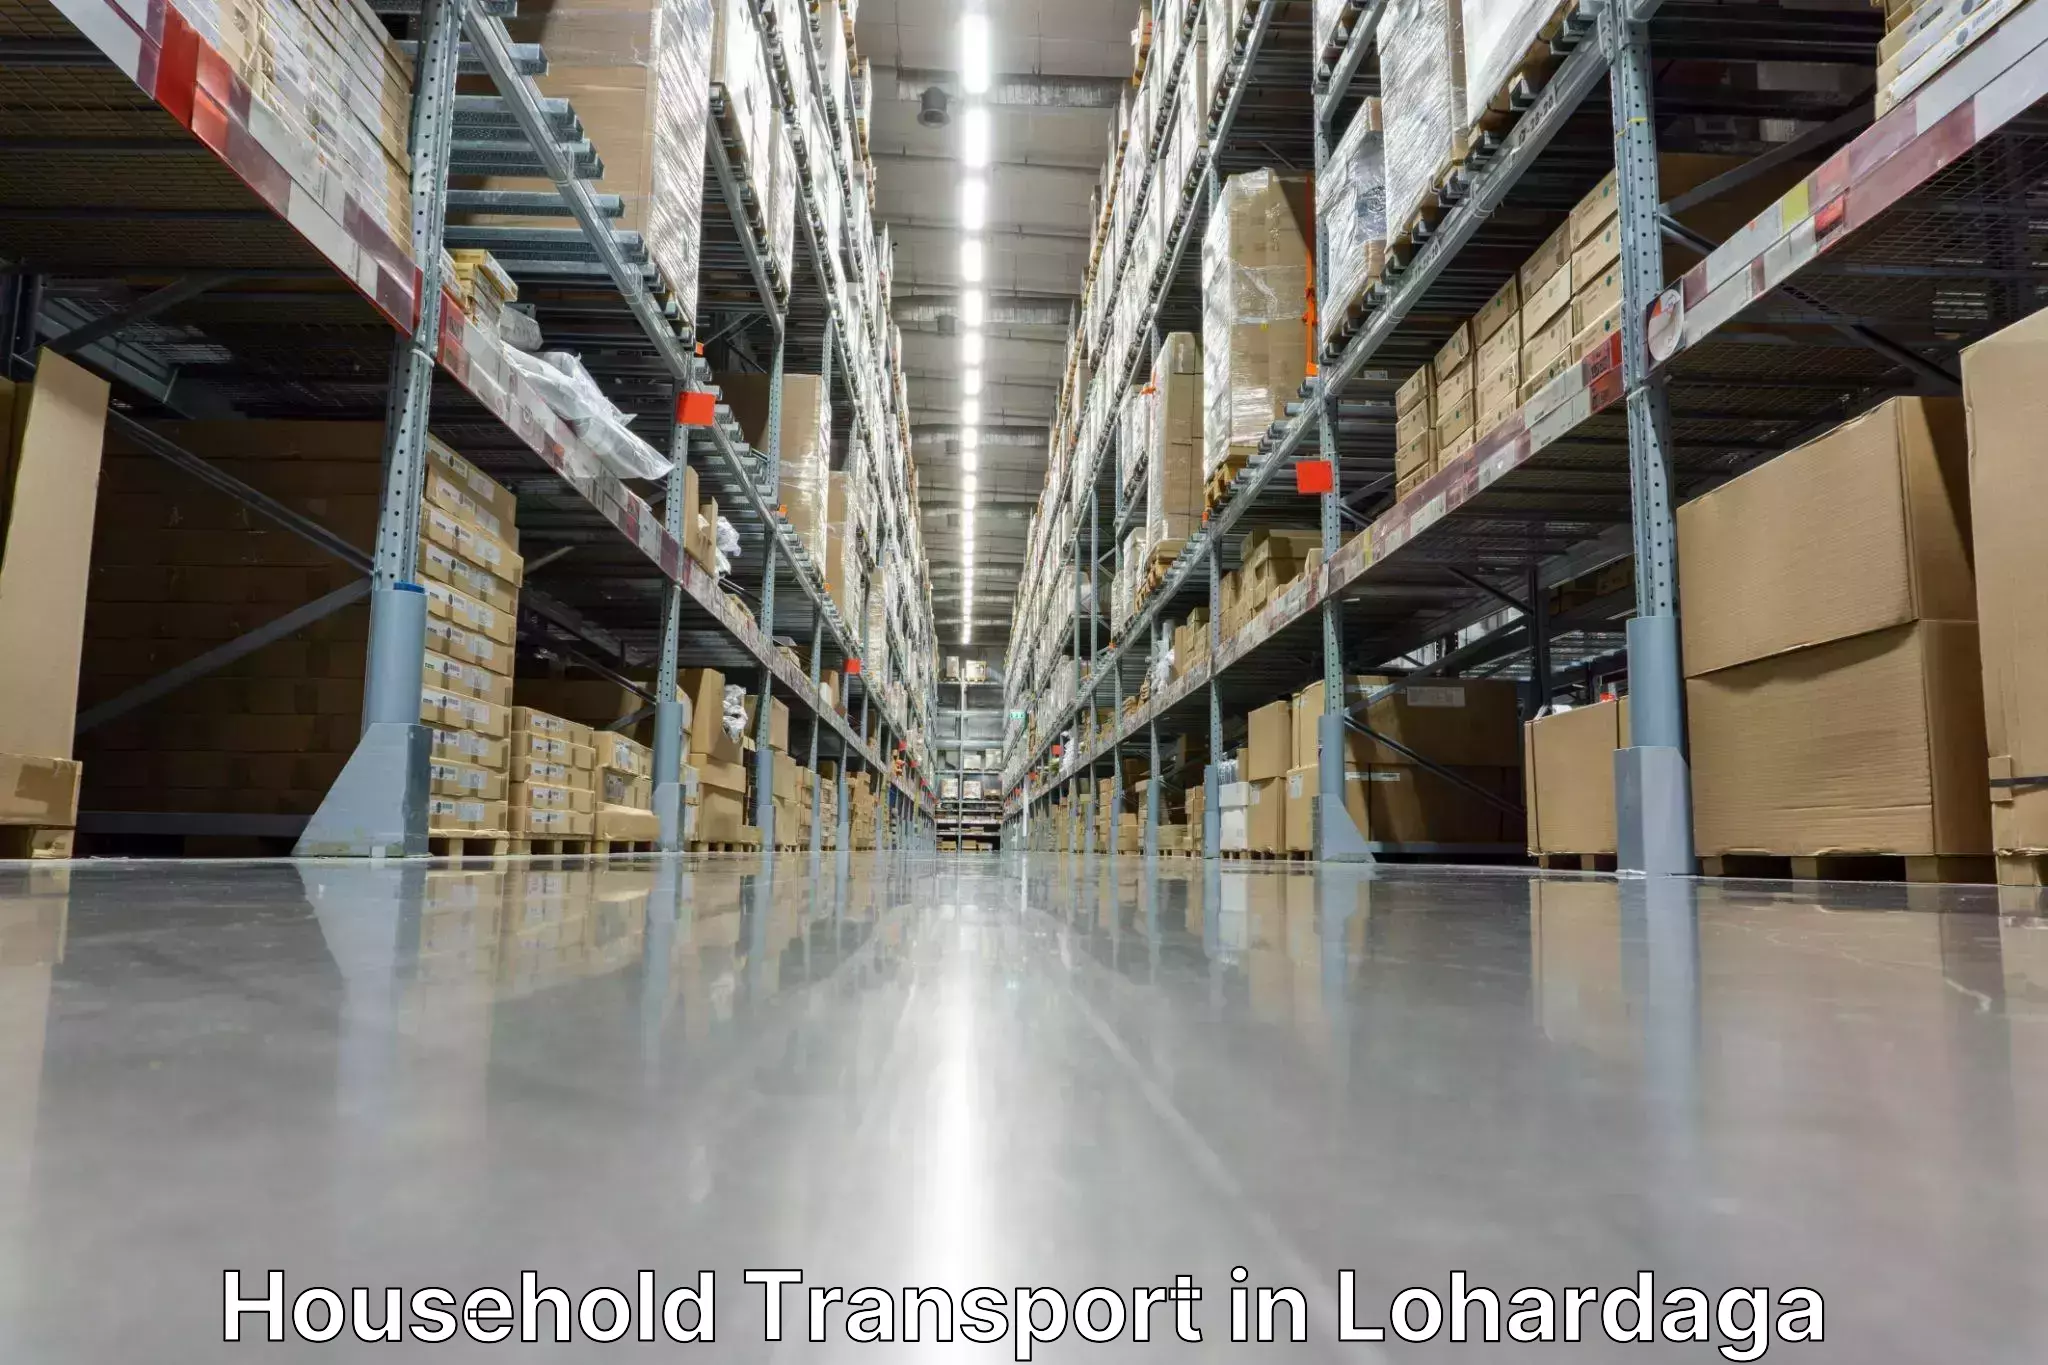 Household goods transport service in Lohardaga